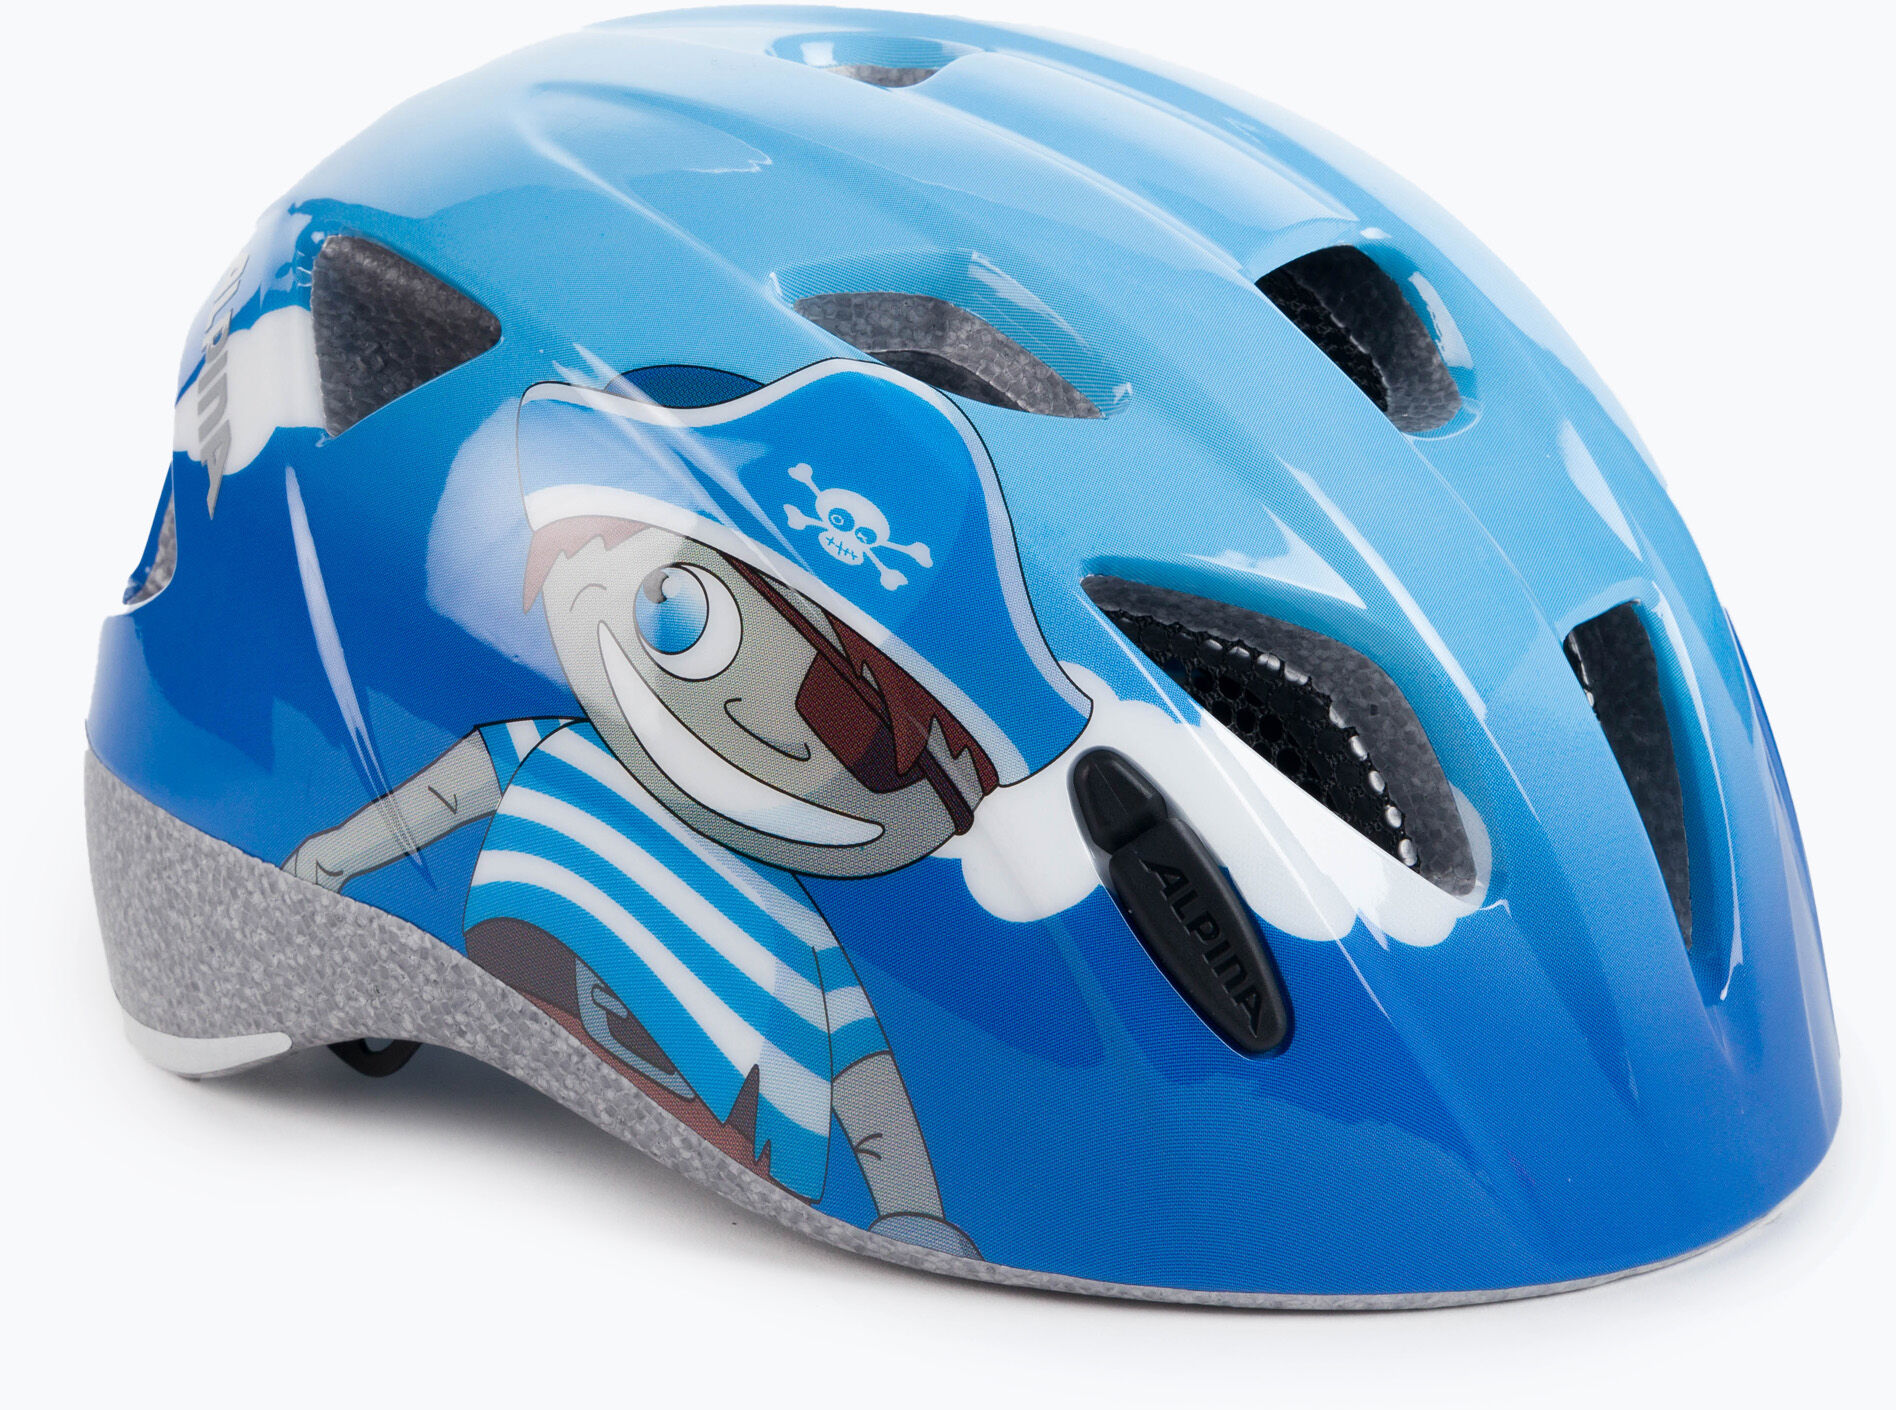 Kask rowerowy dziecięcy Alpina Ximo niebieski A9711180 WYSYŁKA W 24H 30 DNI NA ZWROT